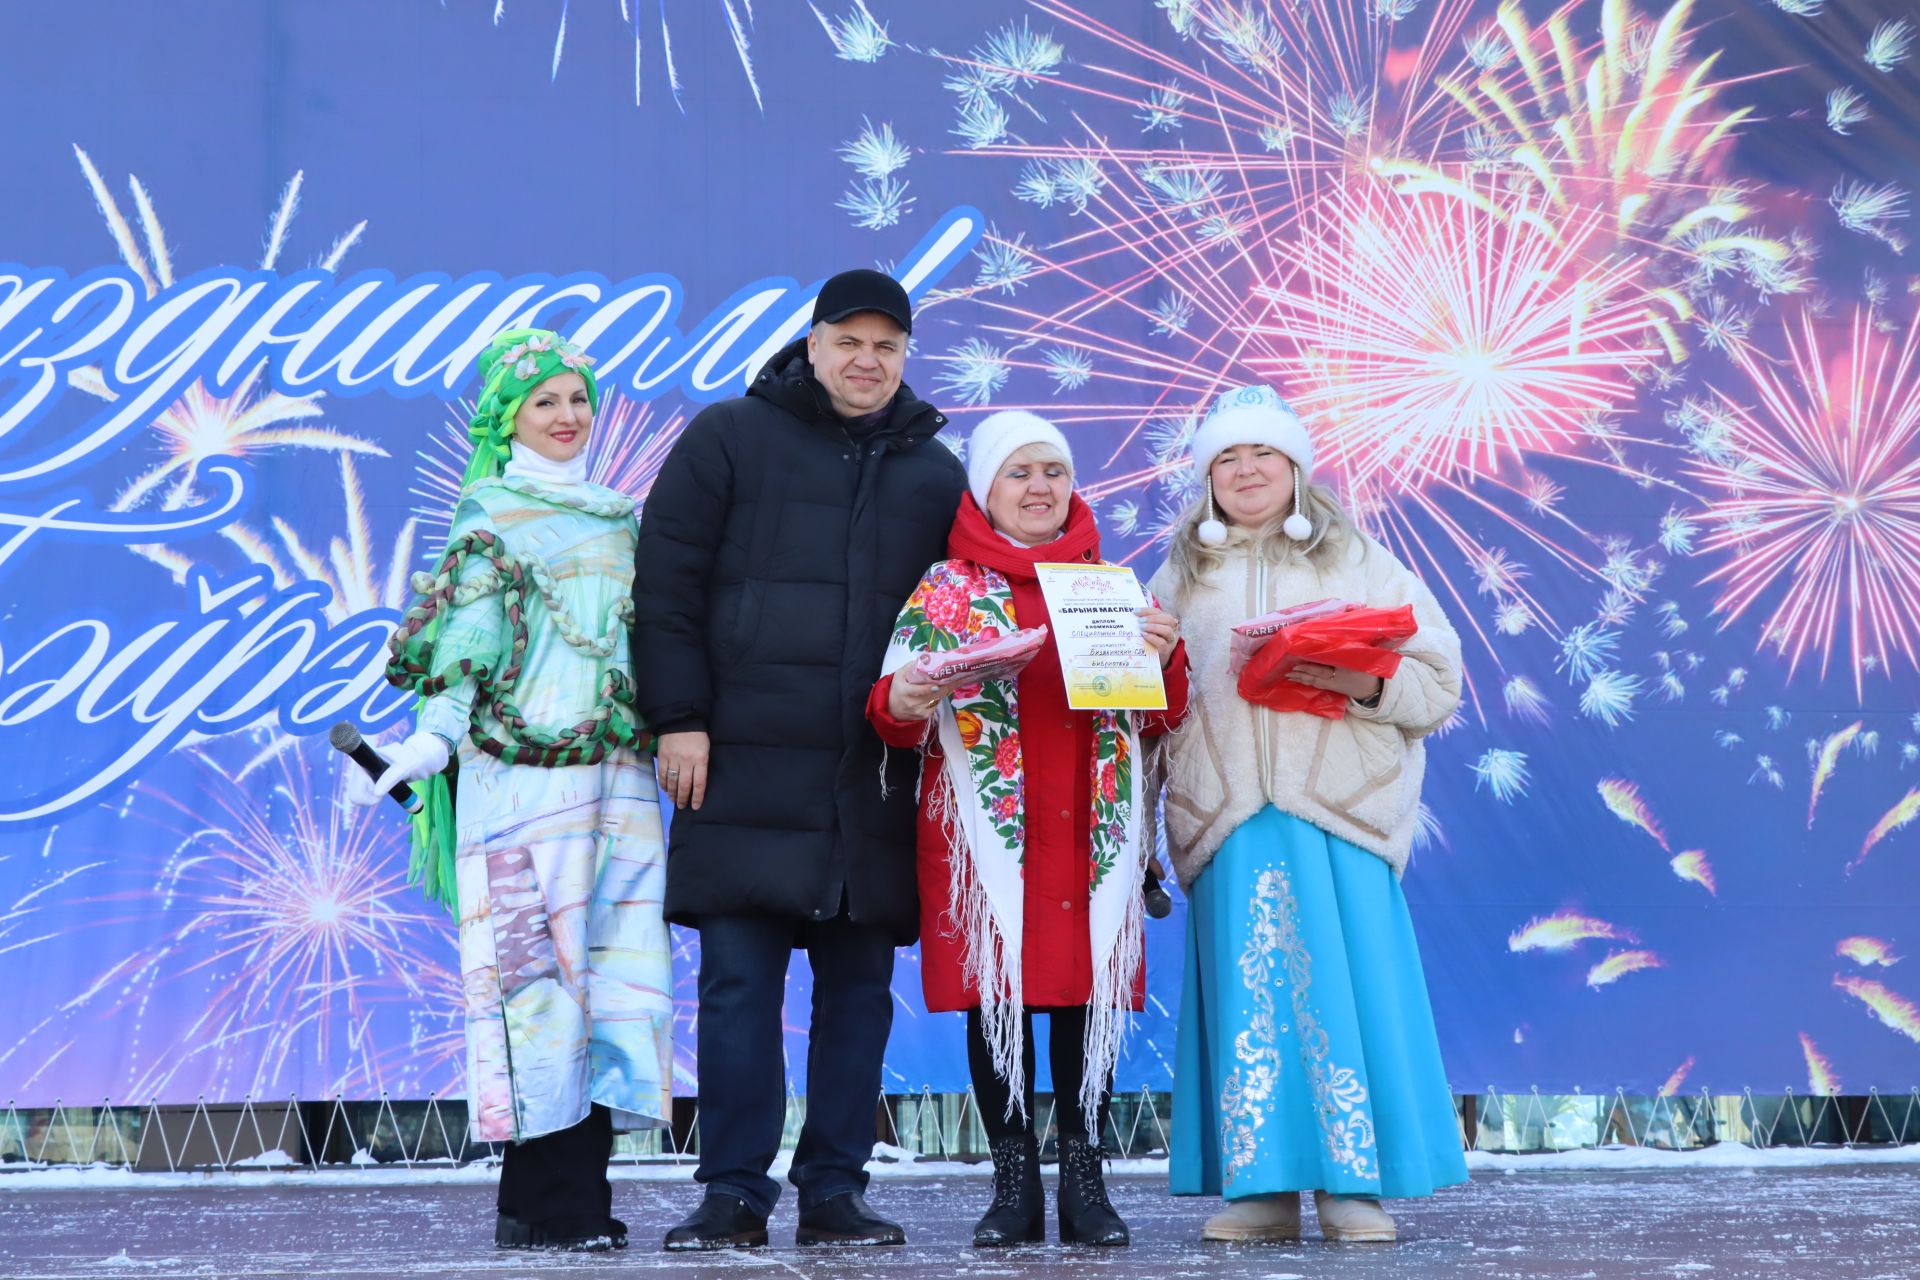 В Менделеевске наградили изготовителя лучшей «Барыни-Маслёны»